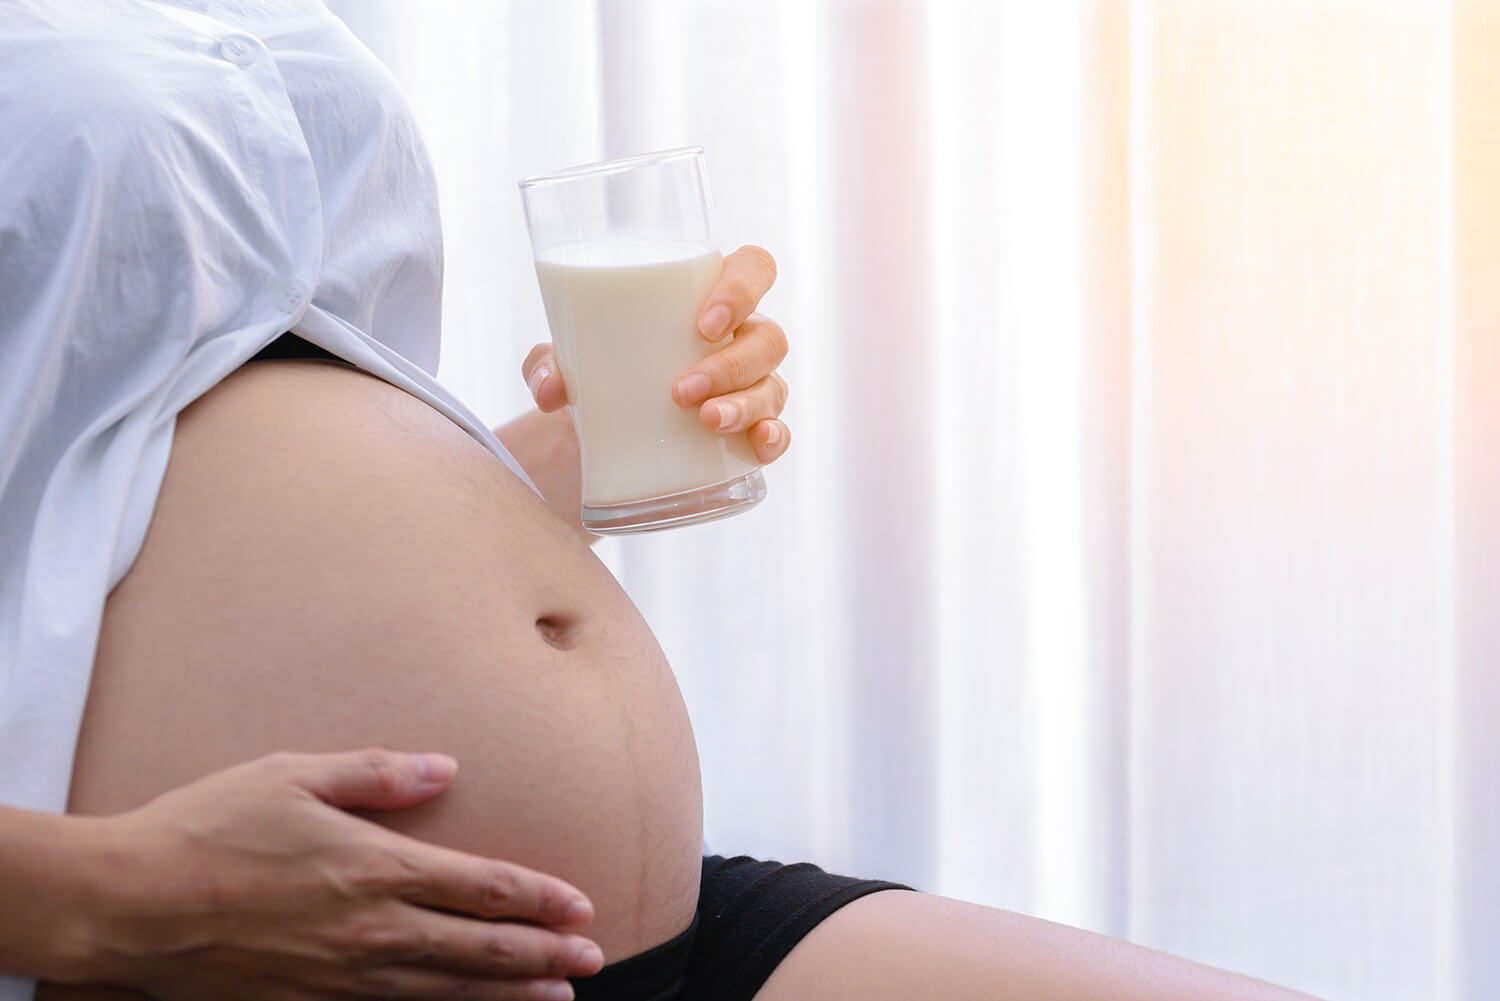 นมคนท้อง นมบำรุงครรภ์ แบบไหนมีแคลเซียมที่เหมาะสมและที่ใช่สำหรับคุณแม่